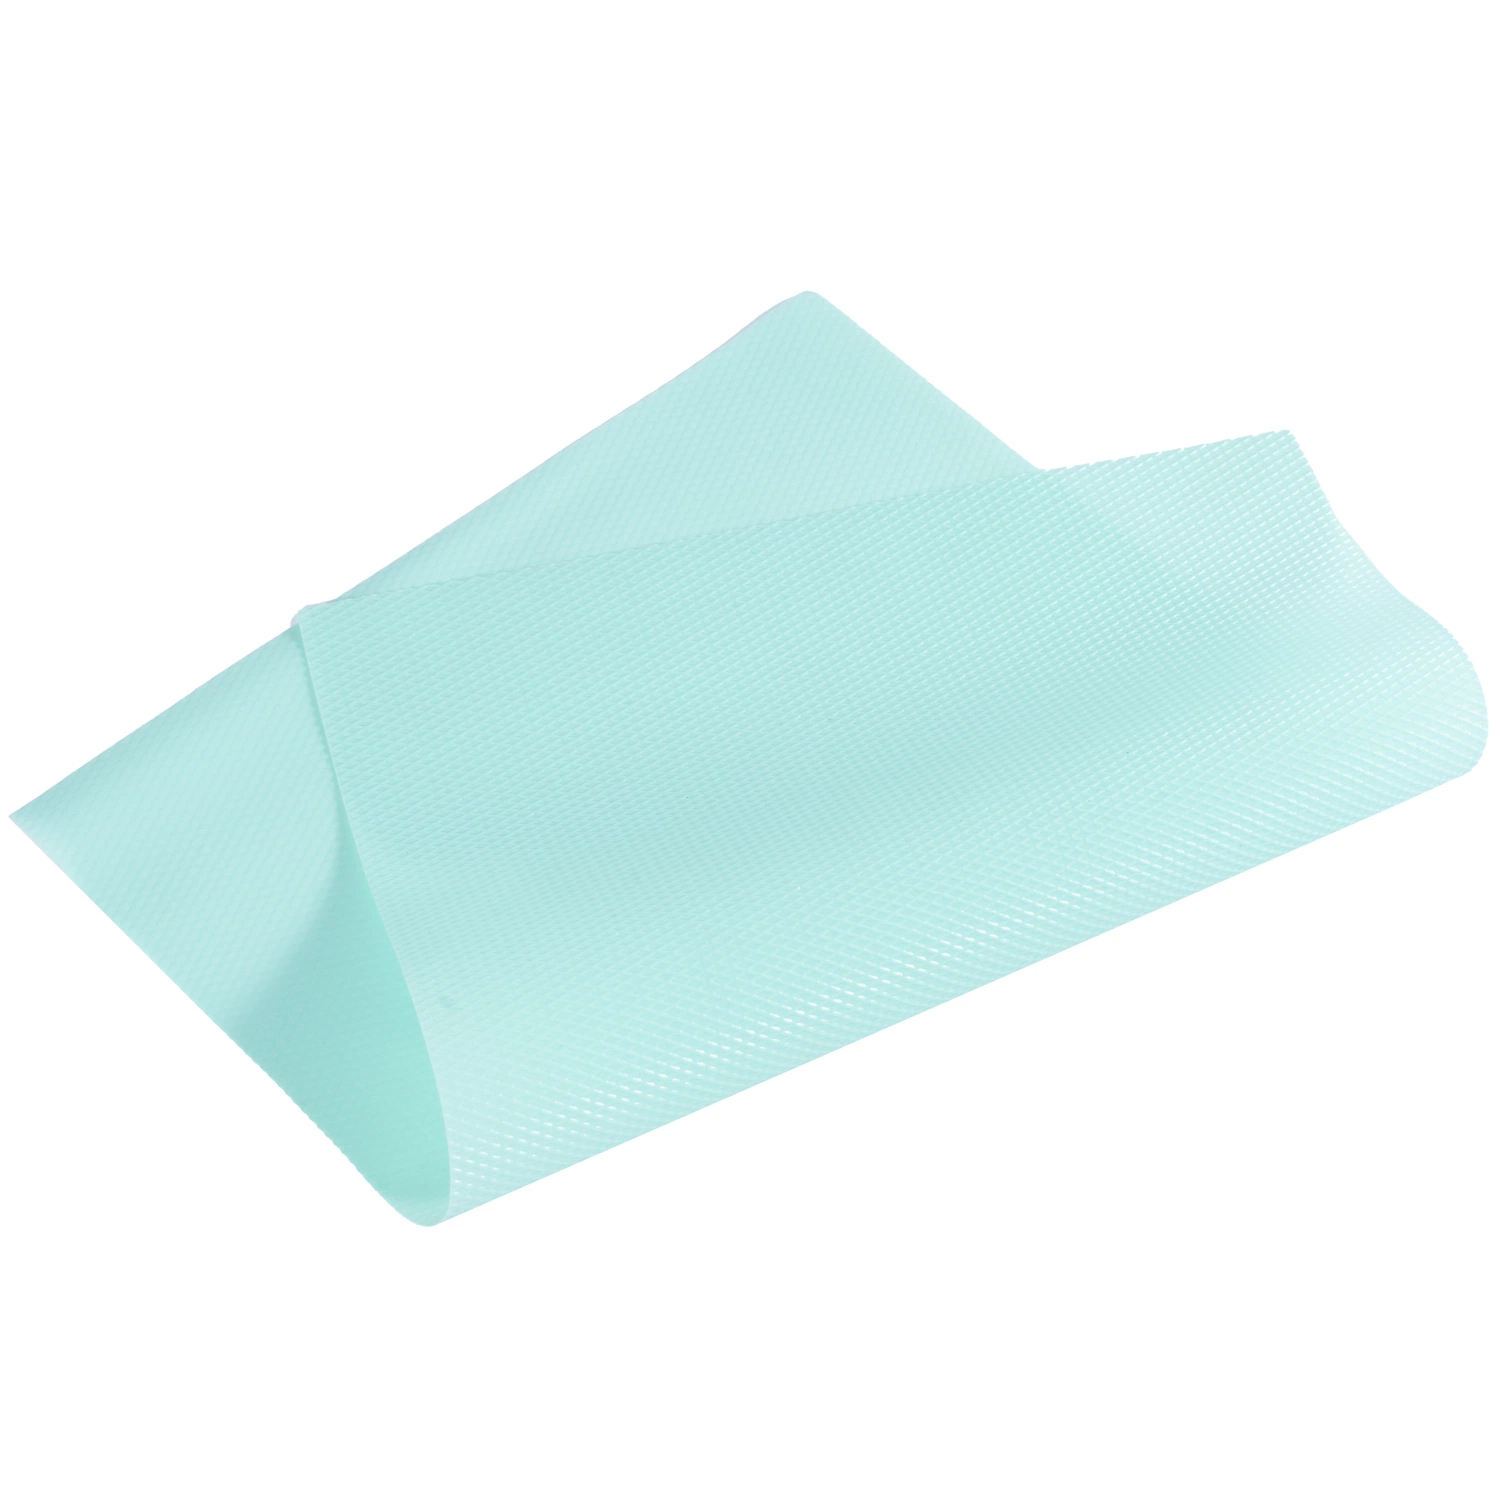 Haute qualité Normale Rouleau en plastique transparent en PVC souple Film clair pour l'emballage